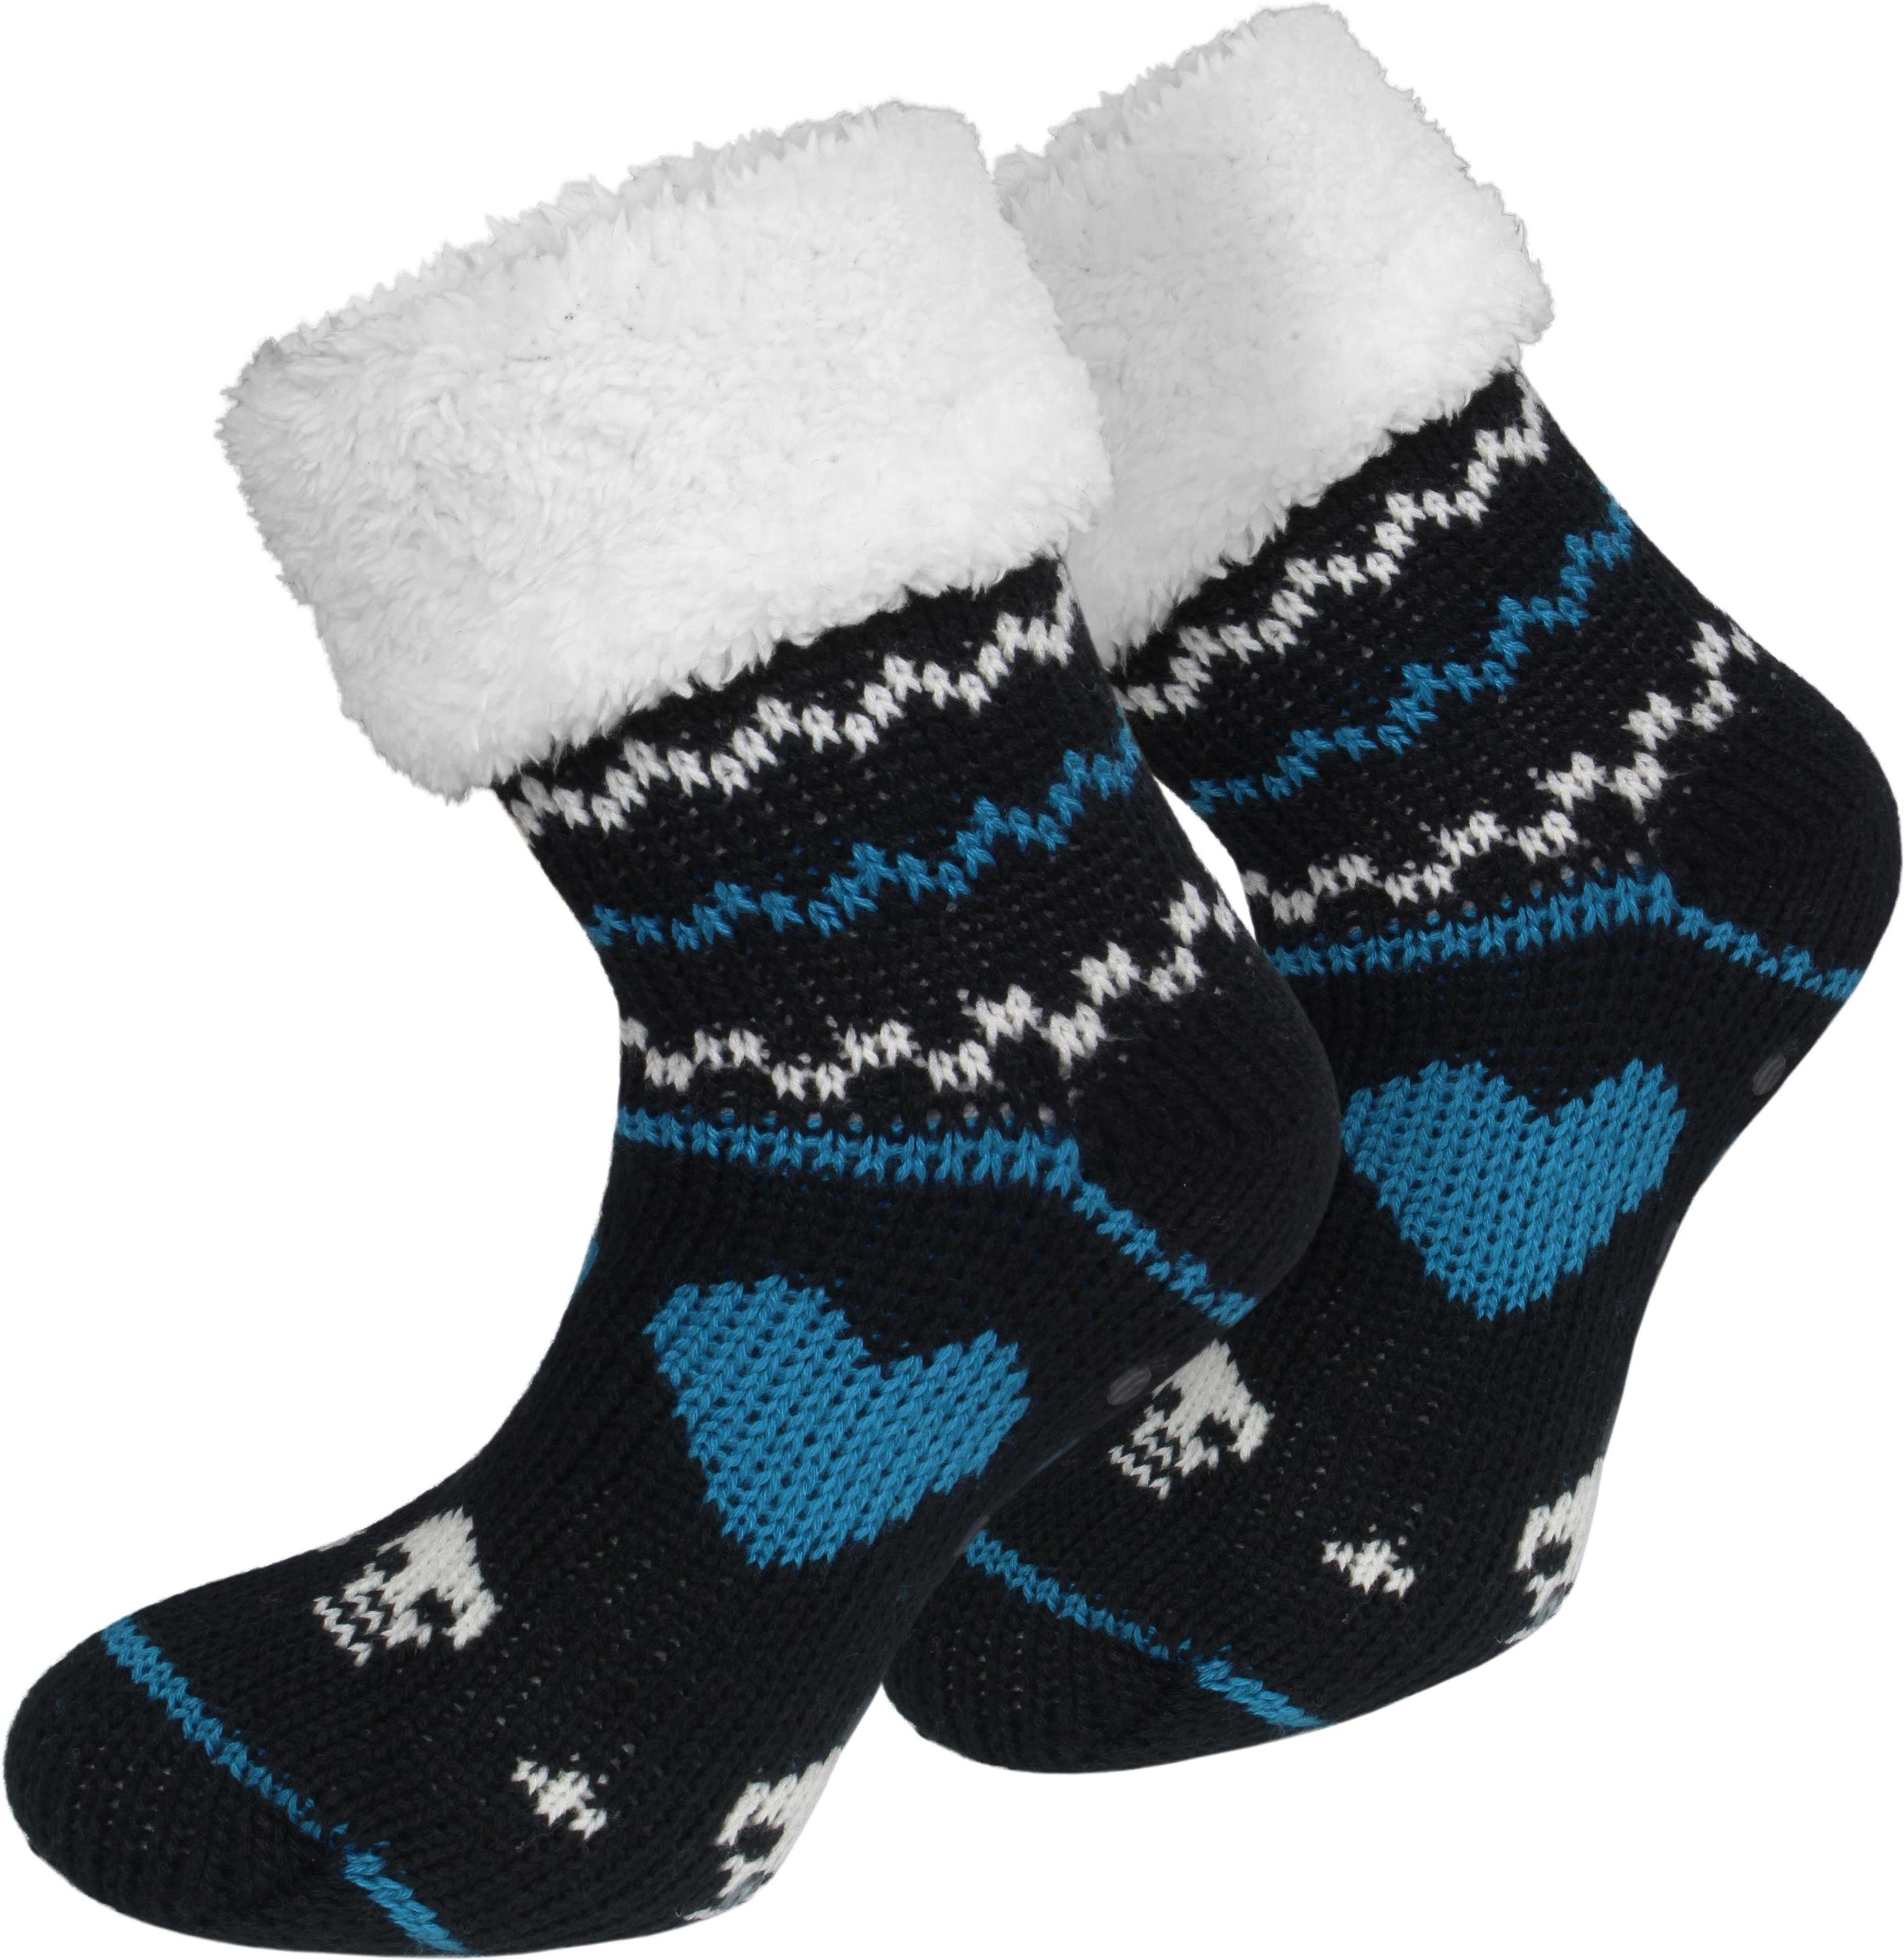 ABS Skulls ABS-Socken kuscheliges Futter und Strick-Hausschuhe normani Norwegermotiv (1 Paar) mit